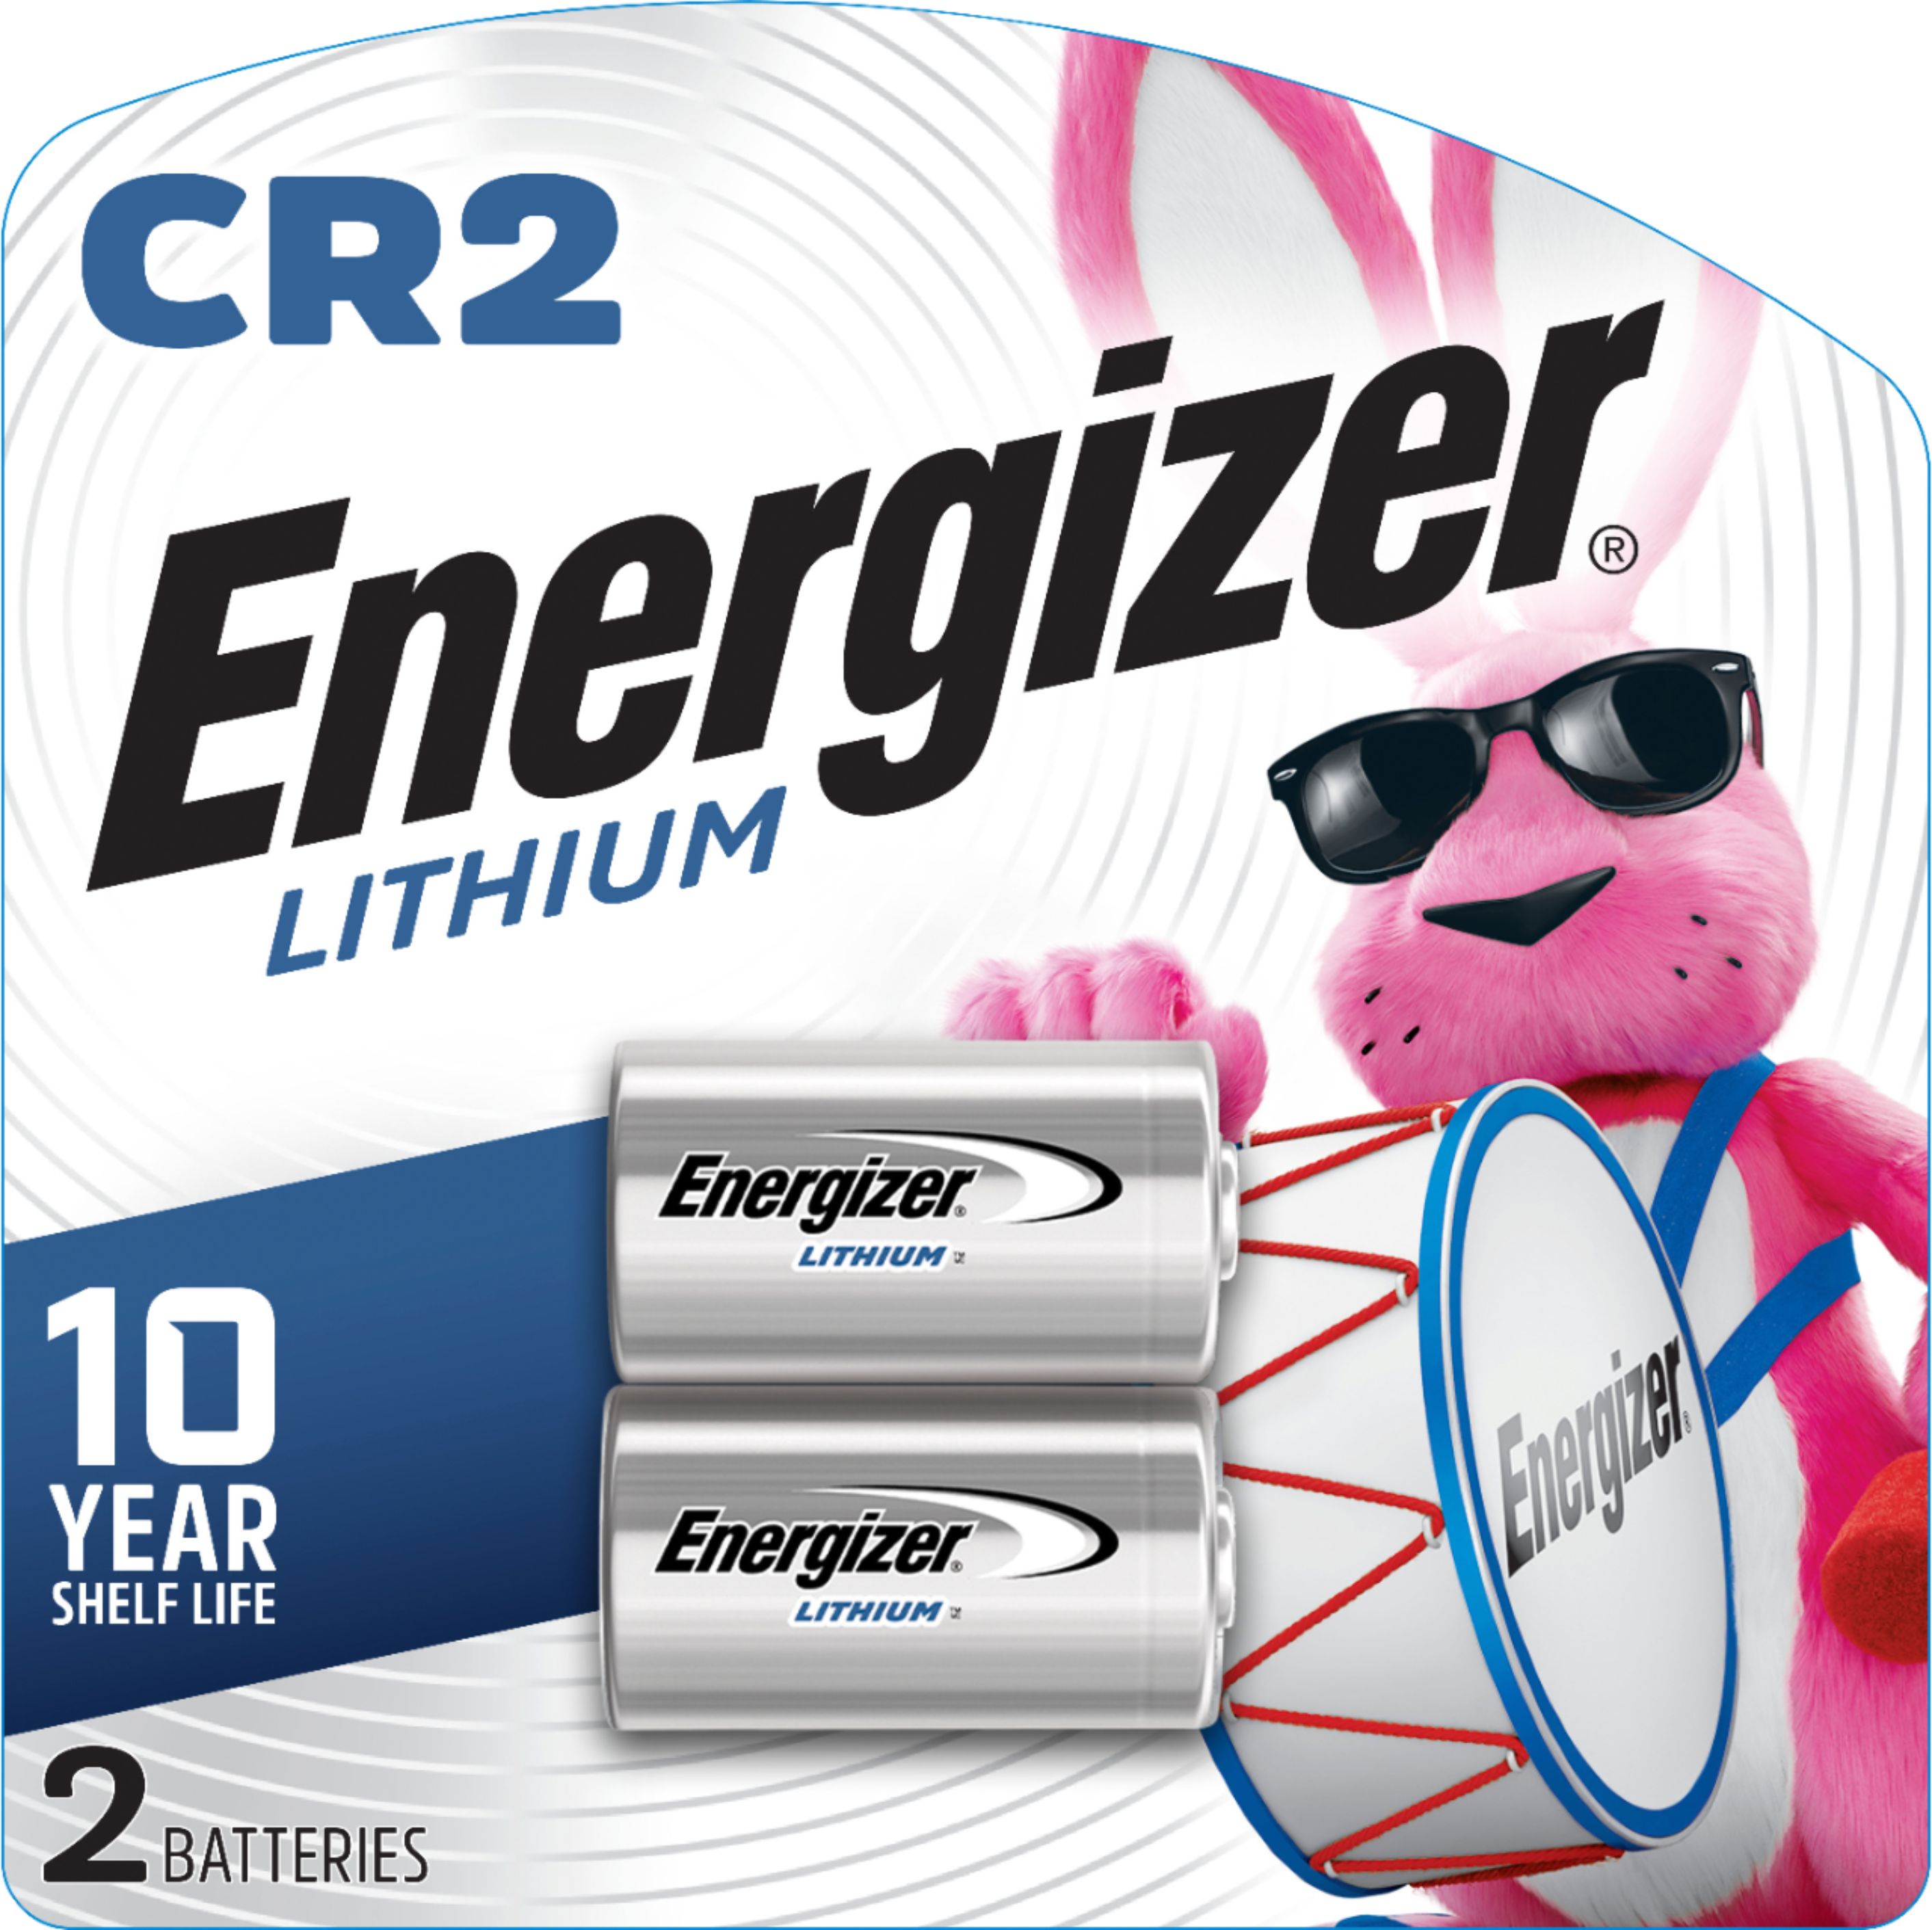 cr2 battery